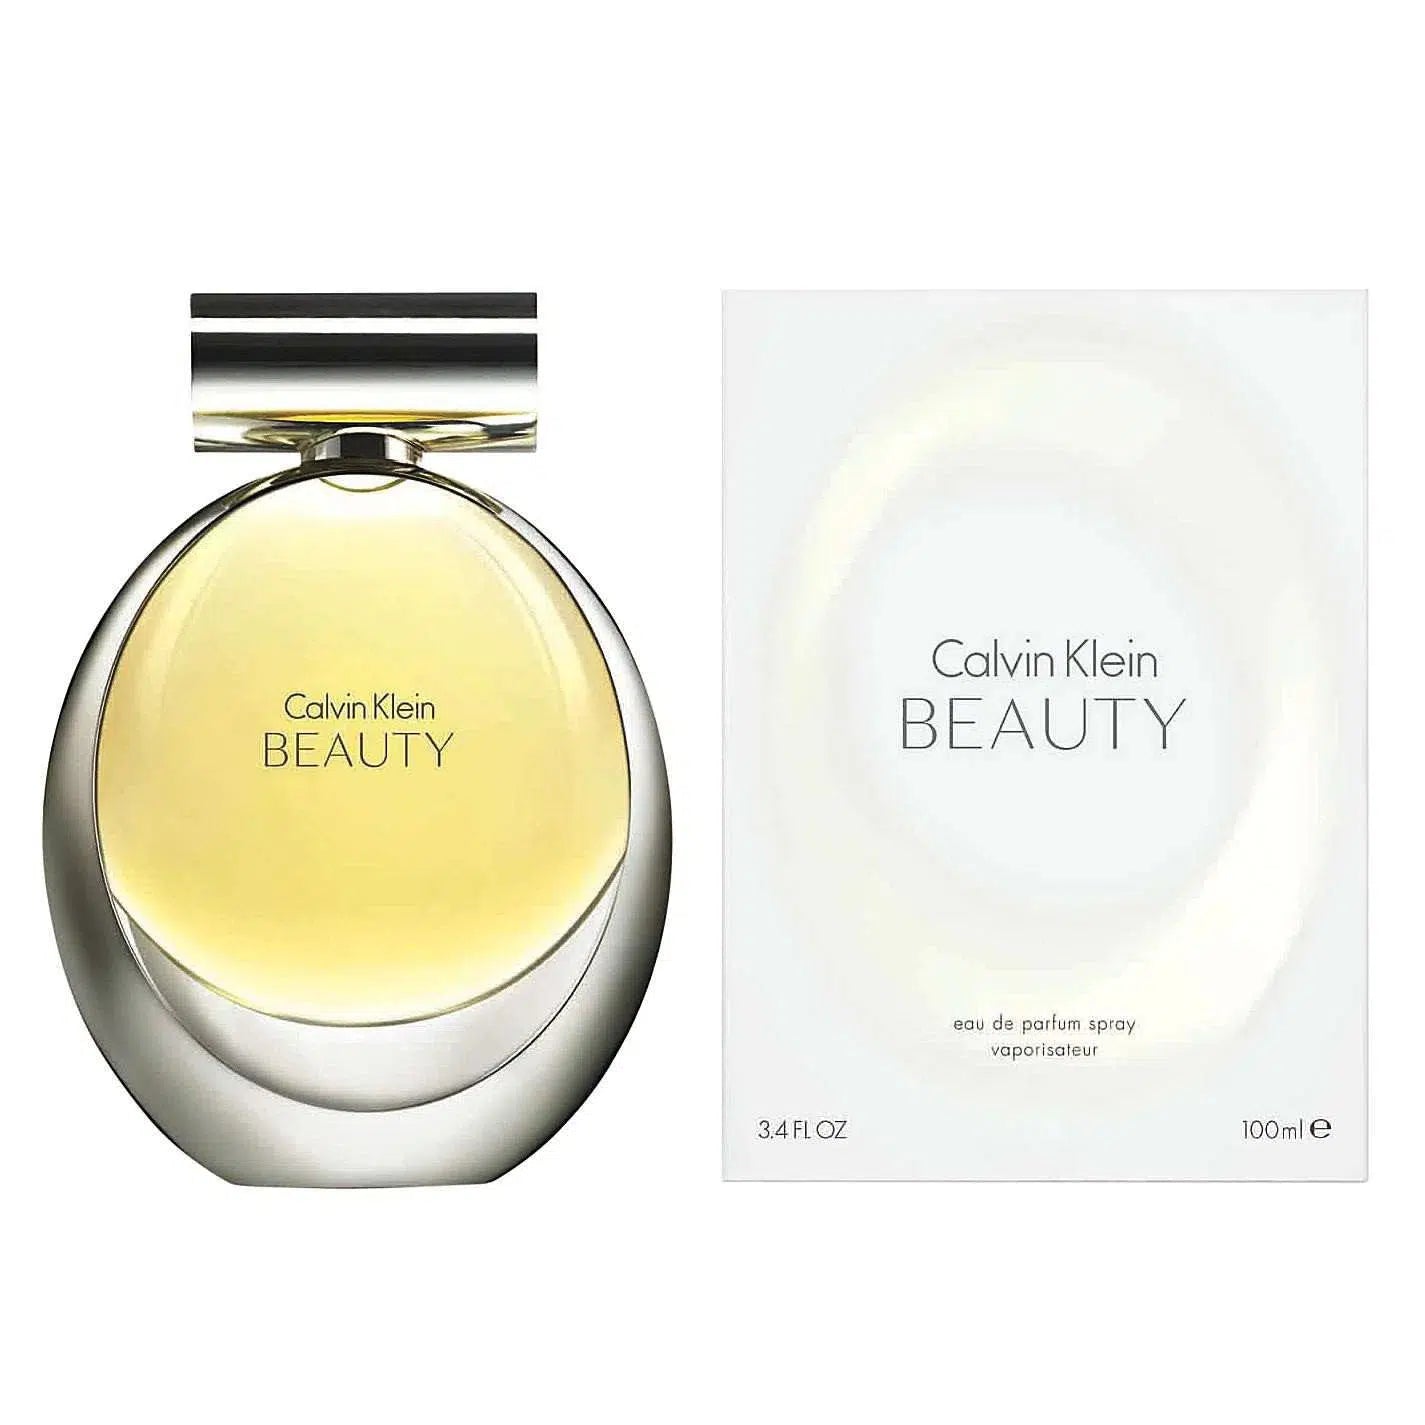 Calvin Klein Beauty 100ml - Perfume Philippines